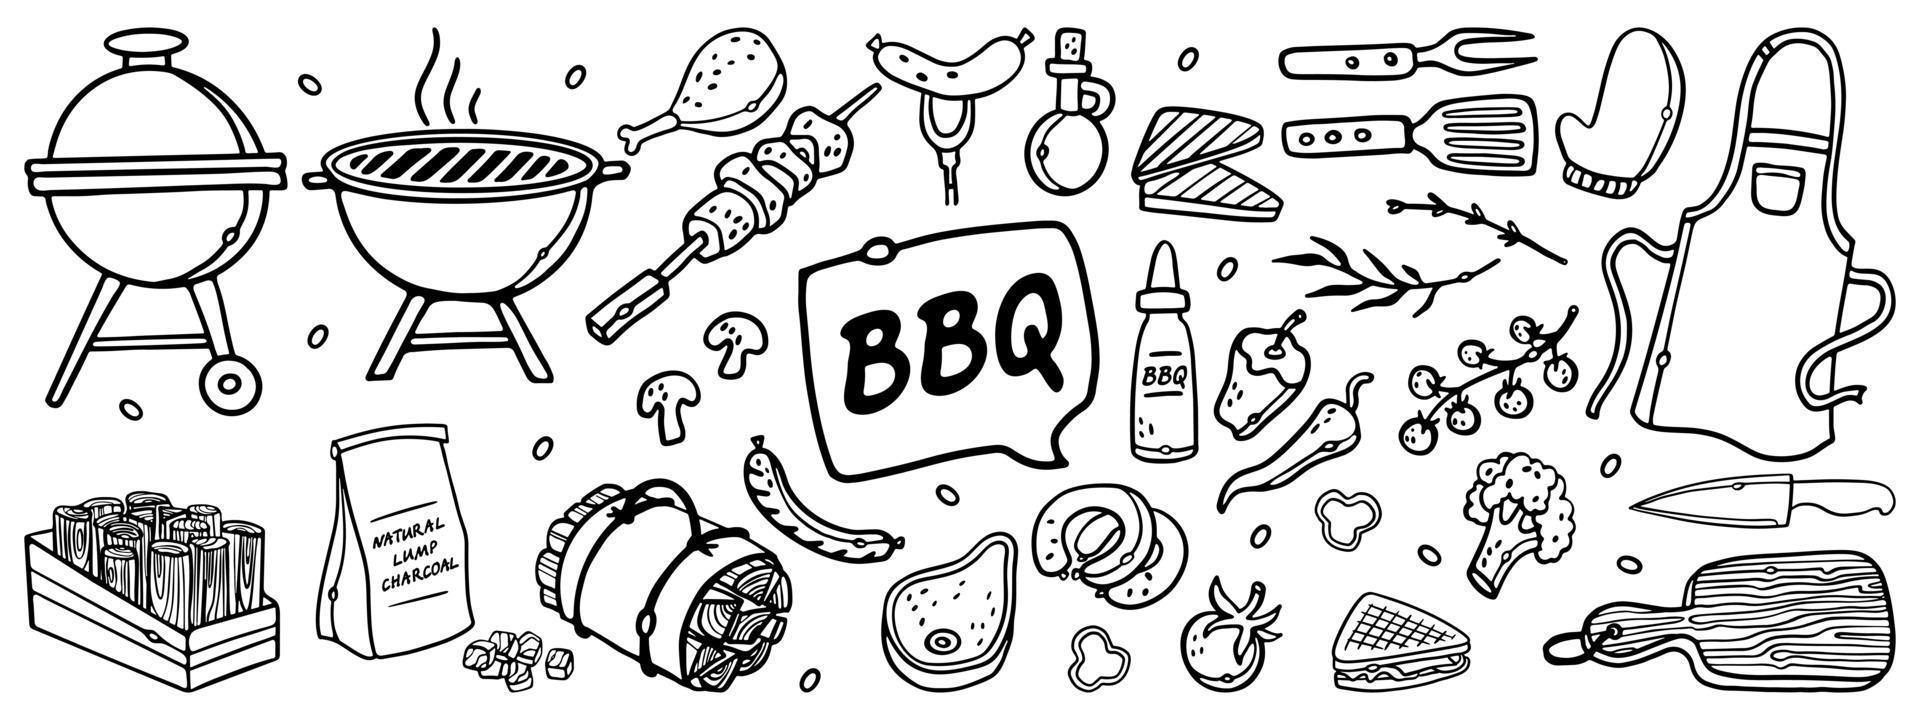 set di doodle di contorni disegnati a mano per barbecue. barbecue illustrazione vettoriale barbecue party sketch. attrezzi da barbecue carbone legna da ardere e prodotti